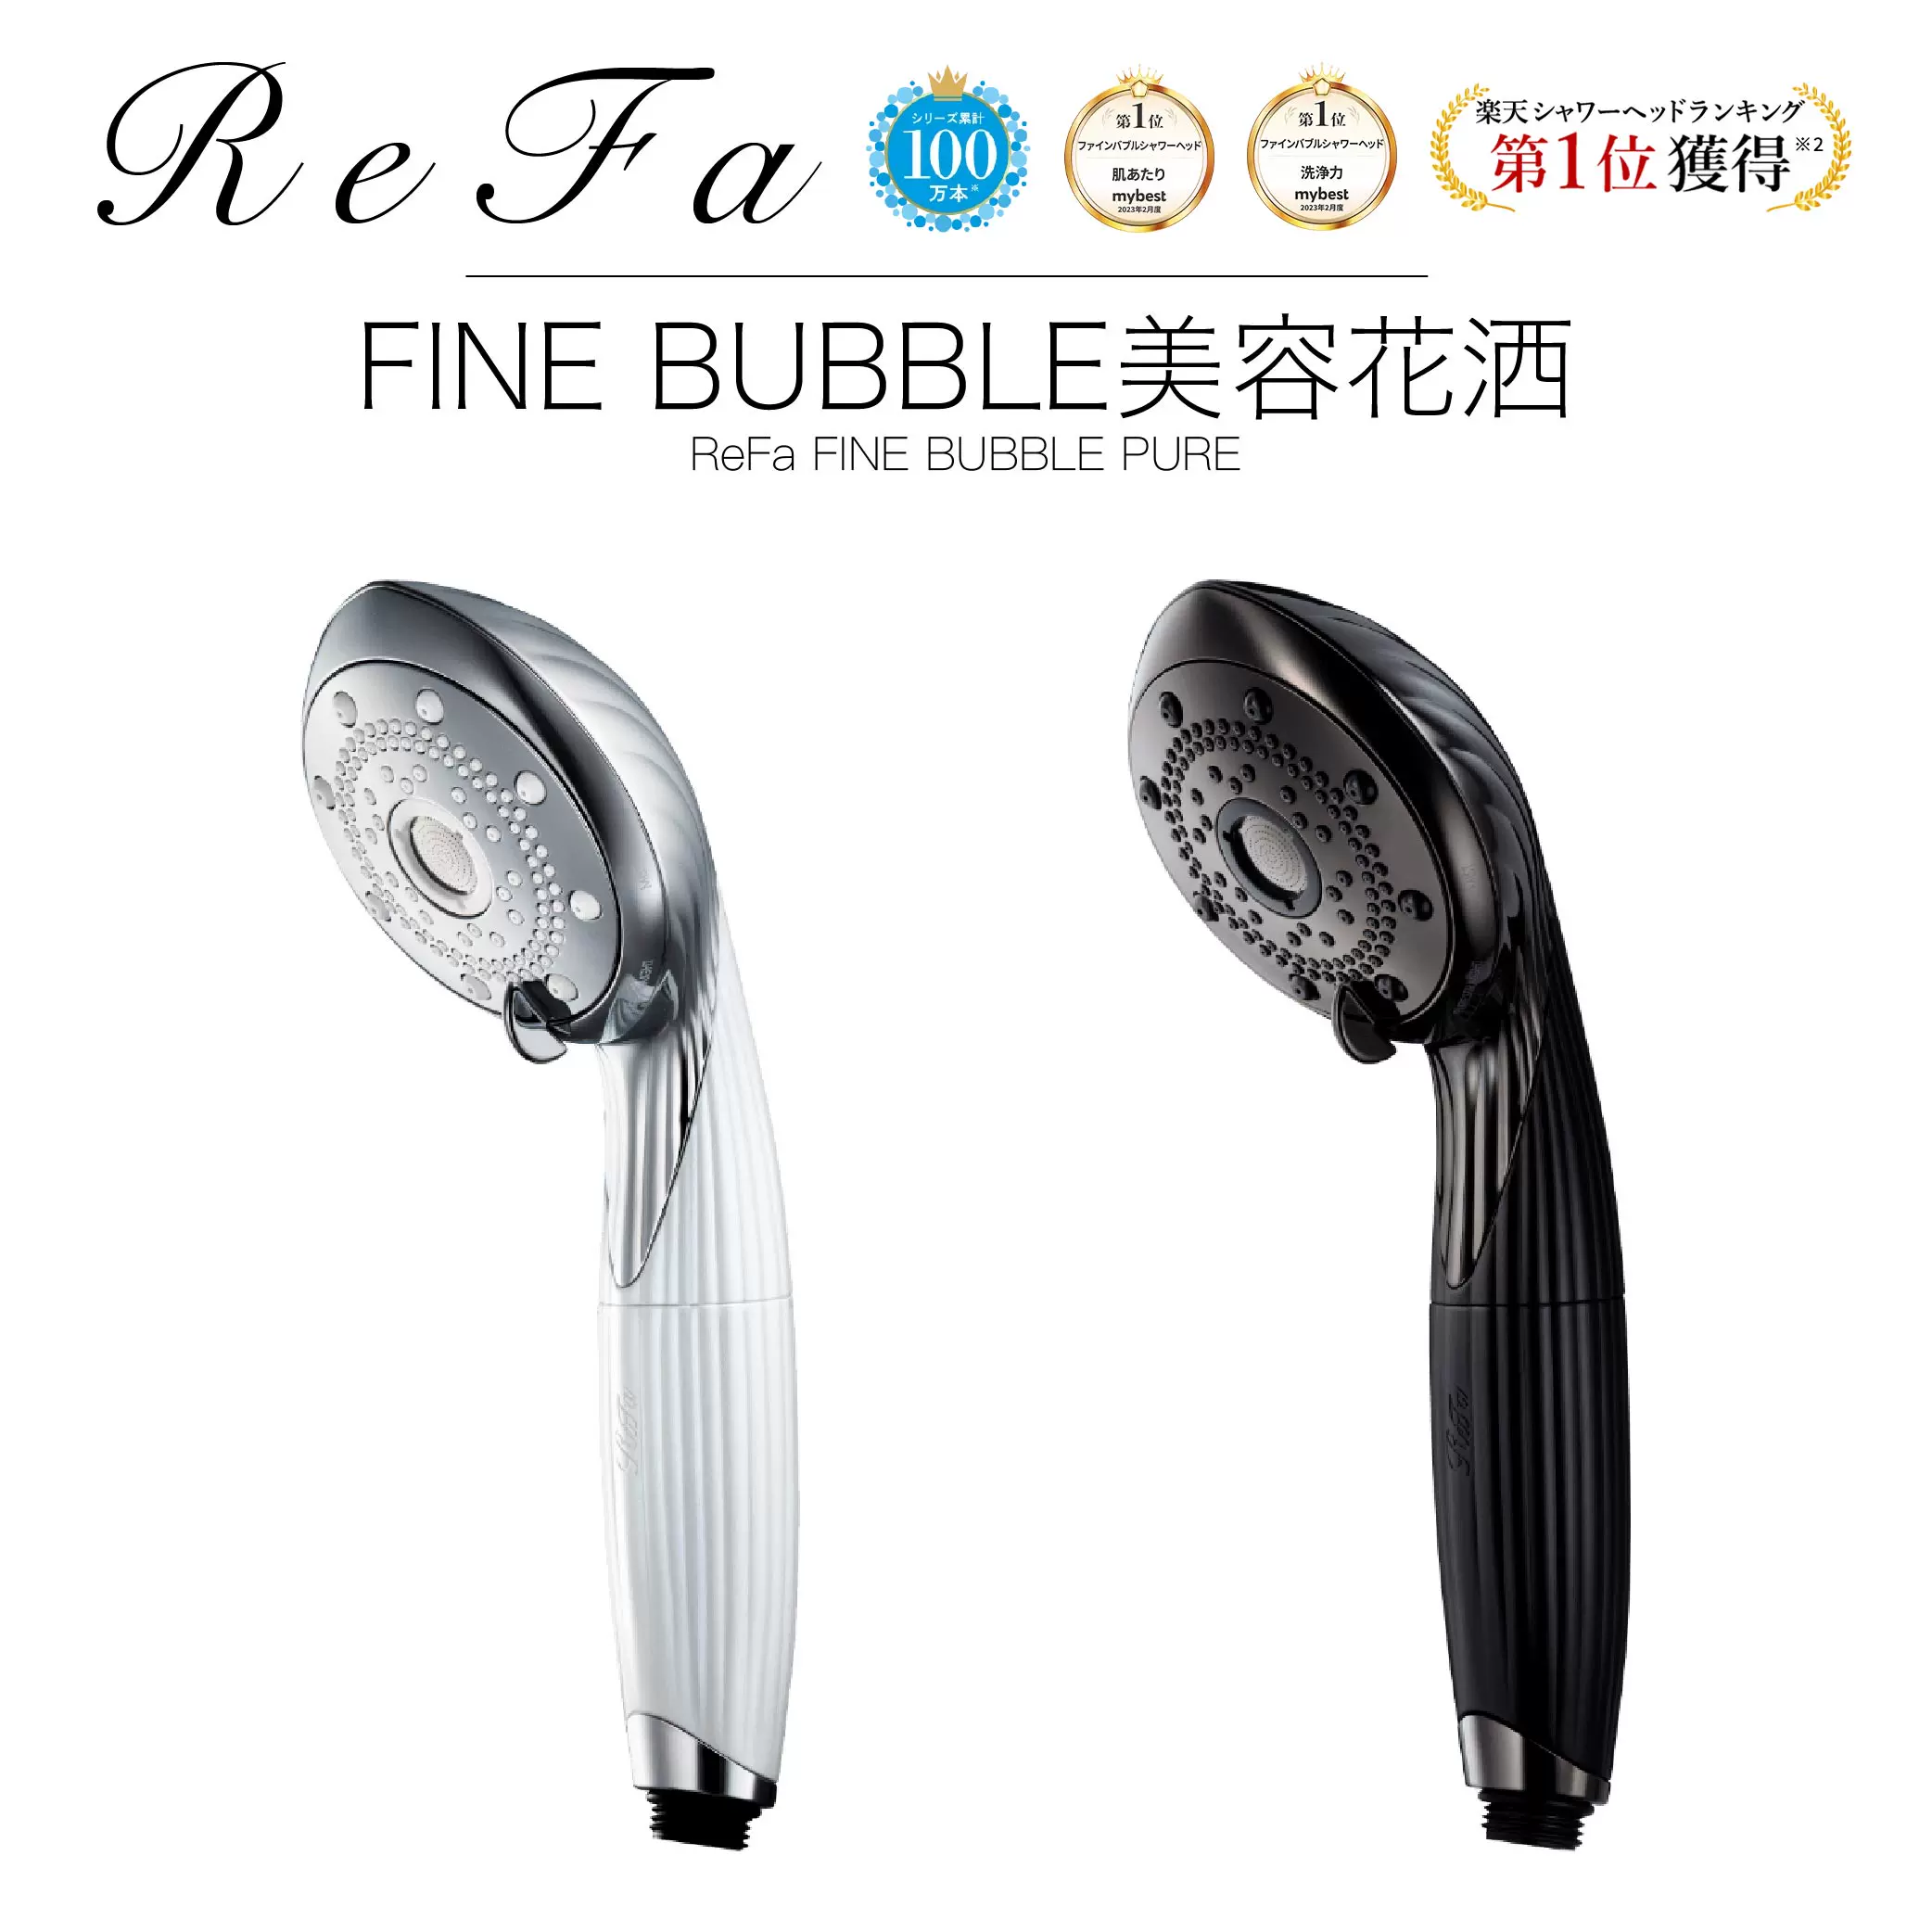 日本直邮新款ReFa FINE BUBBLE PURE美容护肤去除污垢花洒微气泡-Taobao